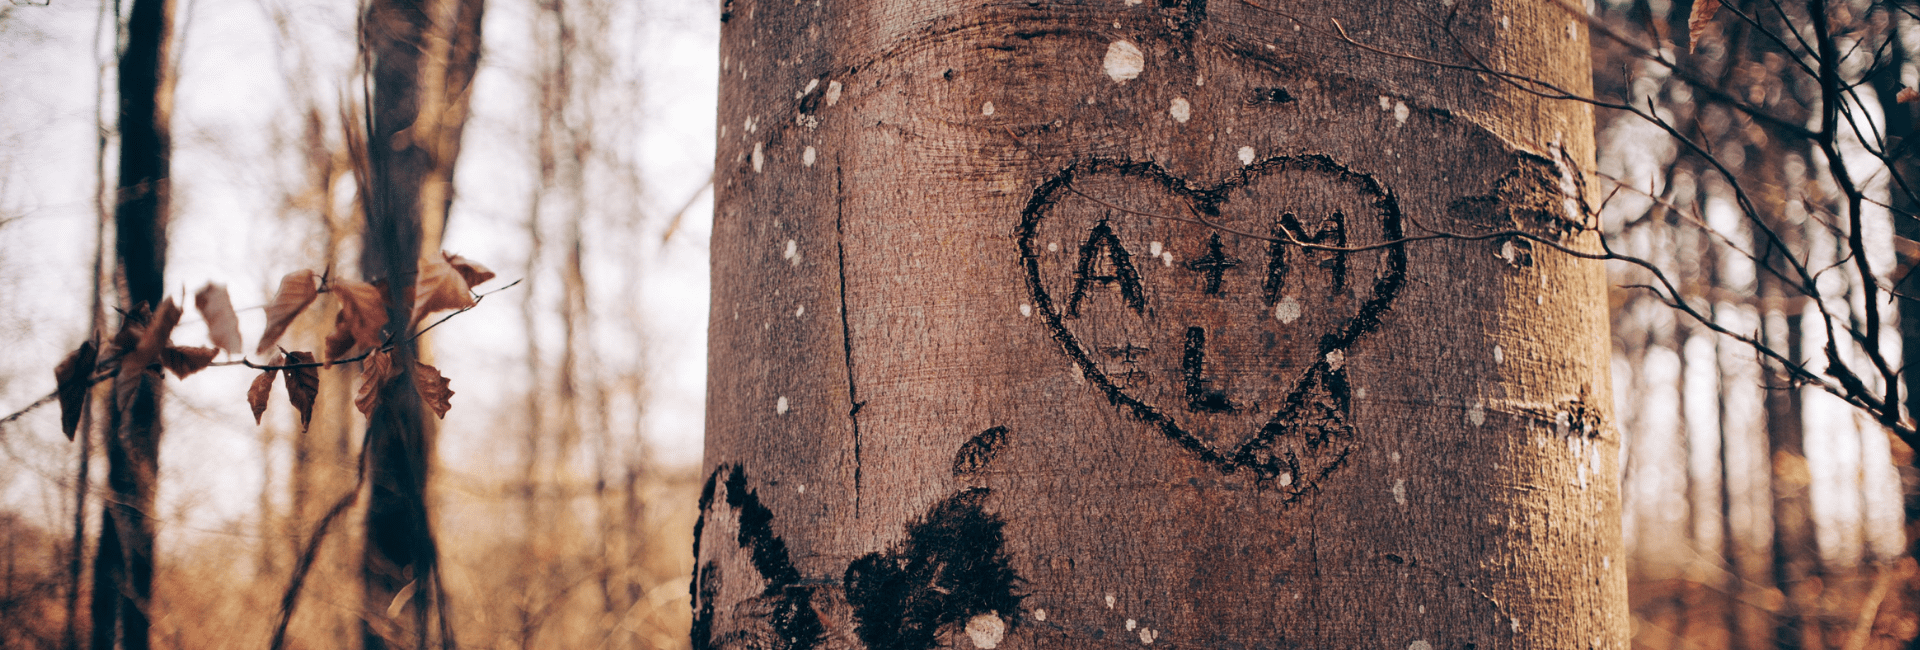 déclaration d'amour originale sur un arbre avec initiales gravés d'amoureux